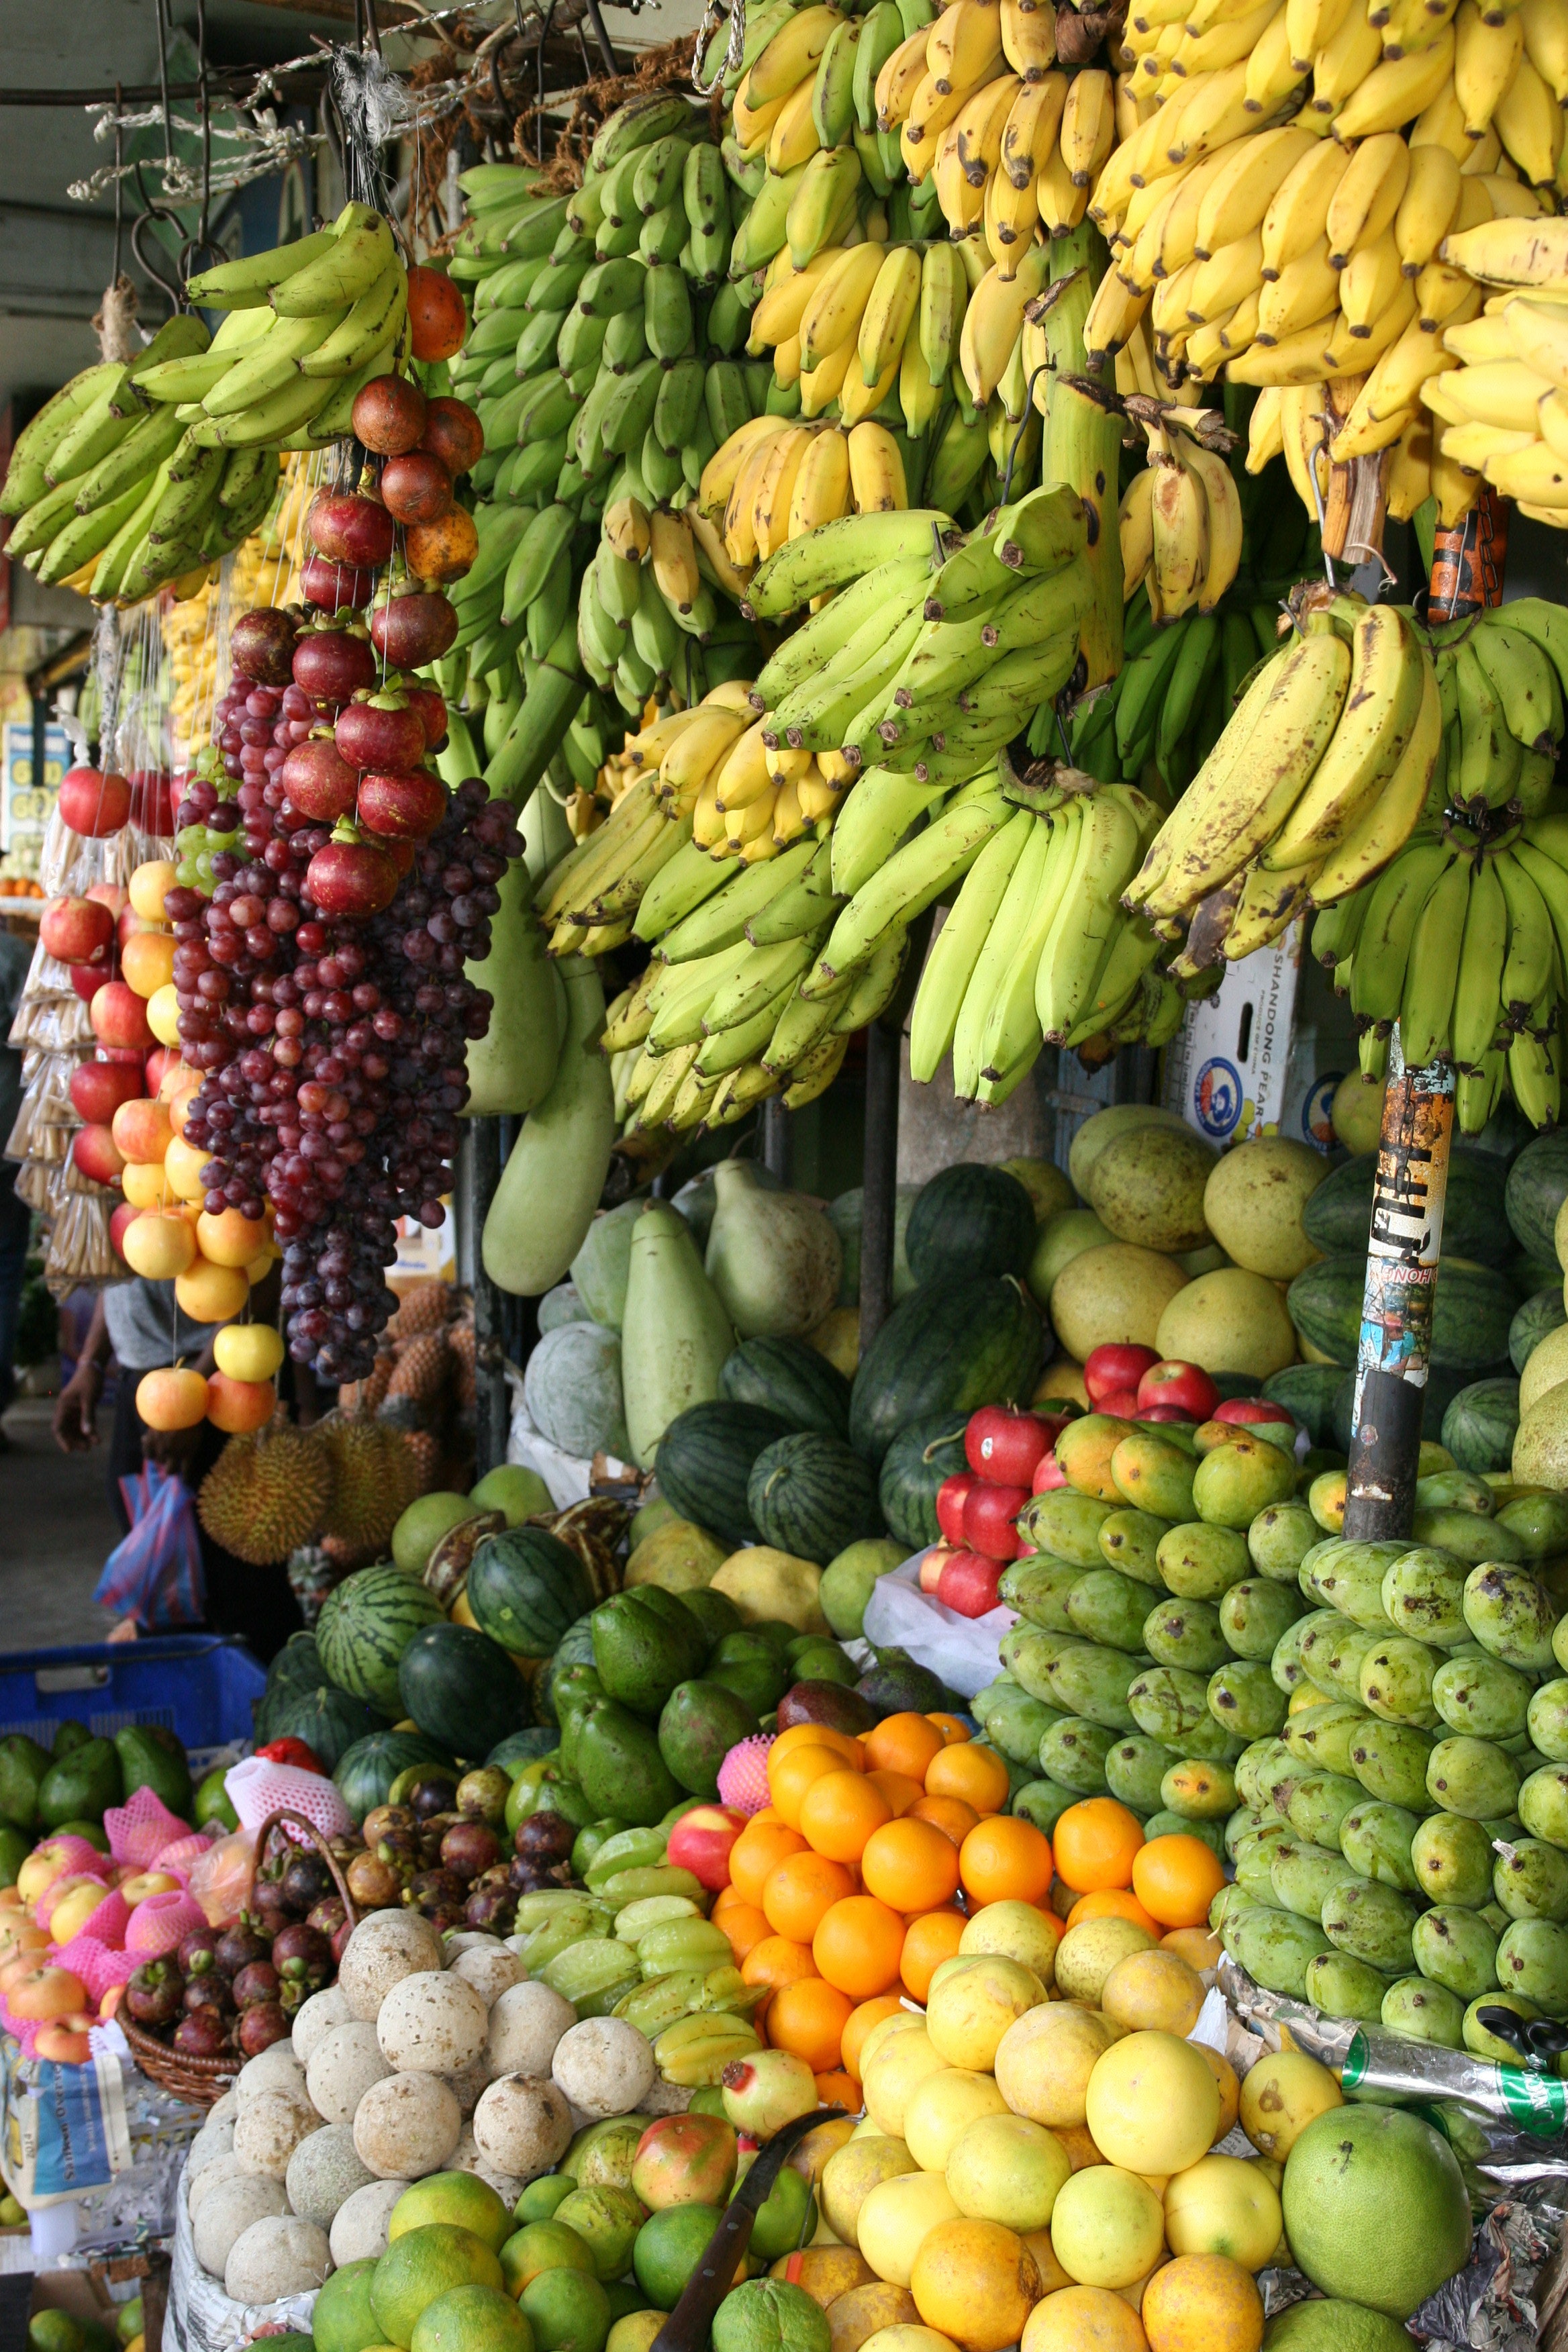 केळी हे जगातील सर्वात जुने फळ मानले जाते. हे फळ जगभरातील बहुतांश देशांमध्ये आढळते. मात्र त्याचे प्रकार सर्वत्र भिन्न आहे.